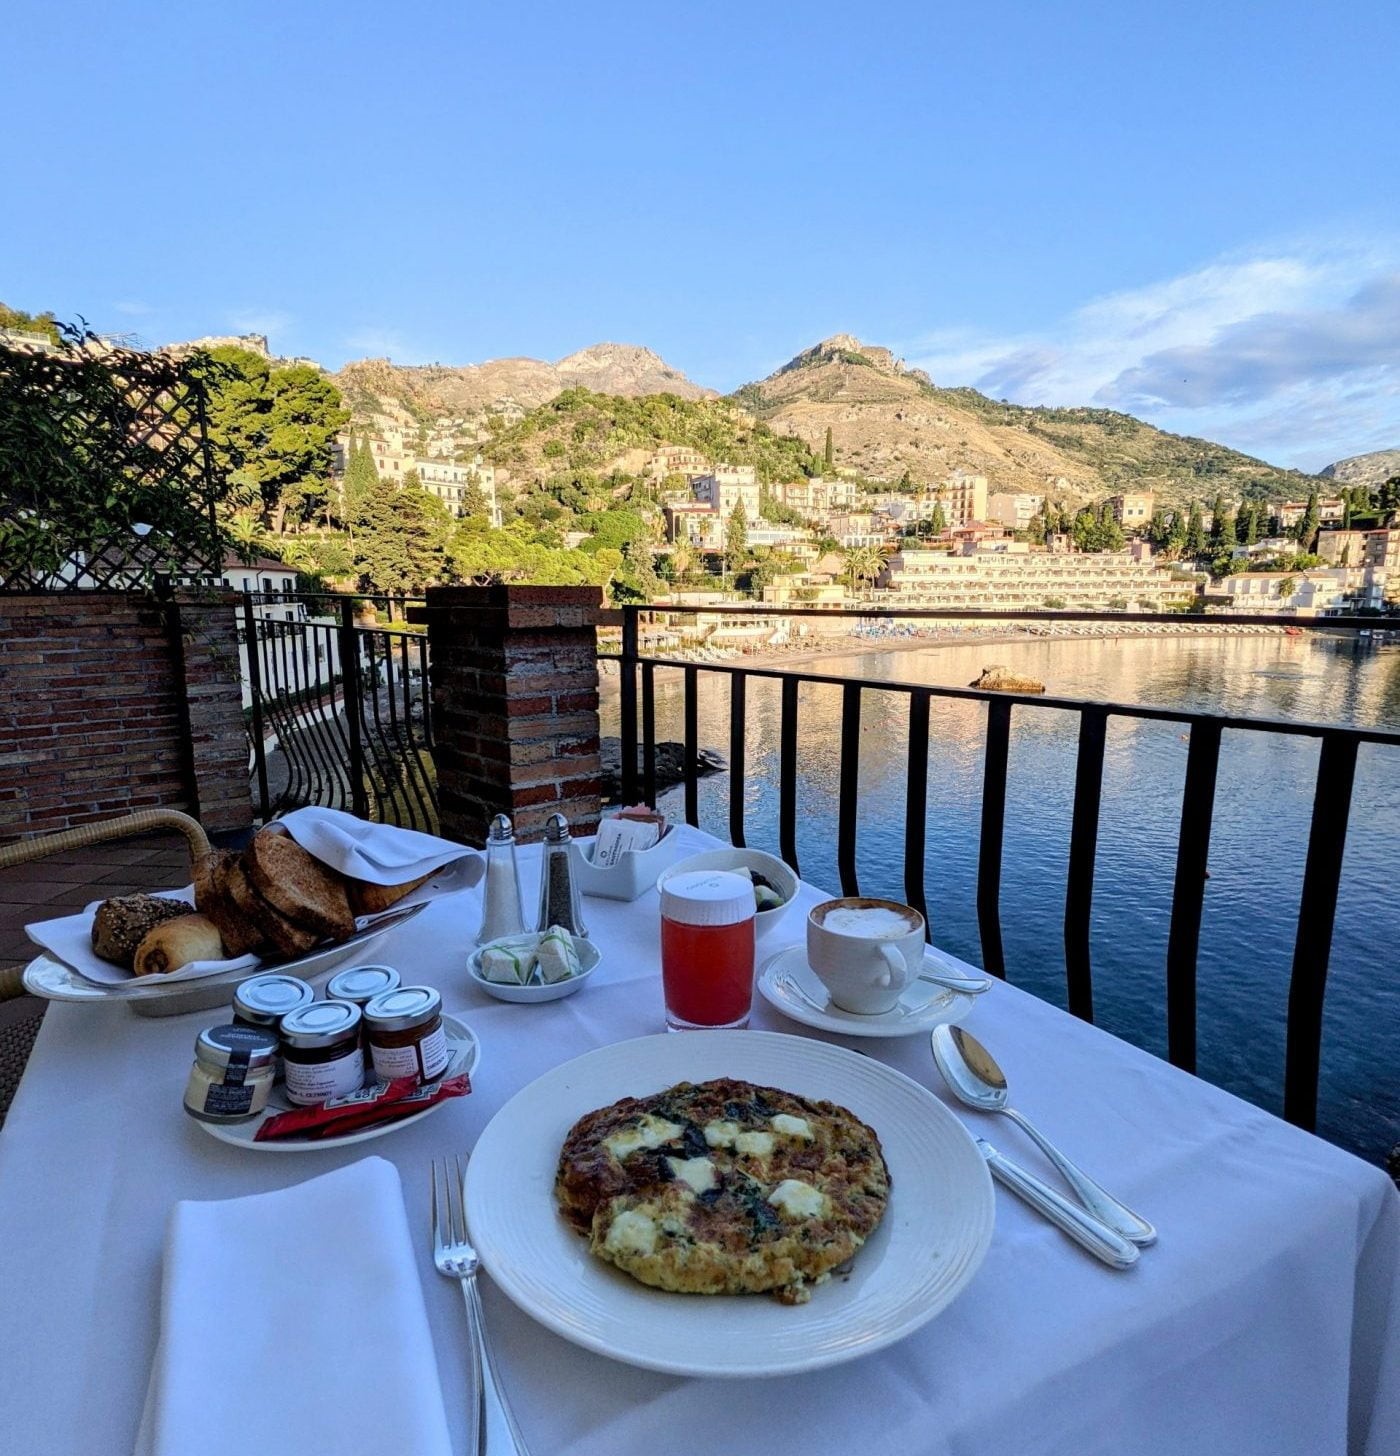 Breakfast at Villa Sant’Andrea